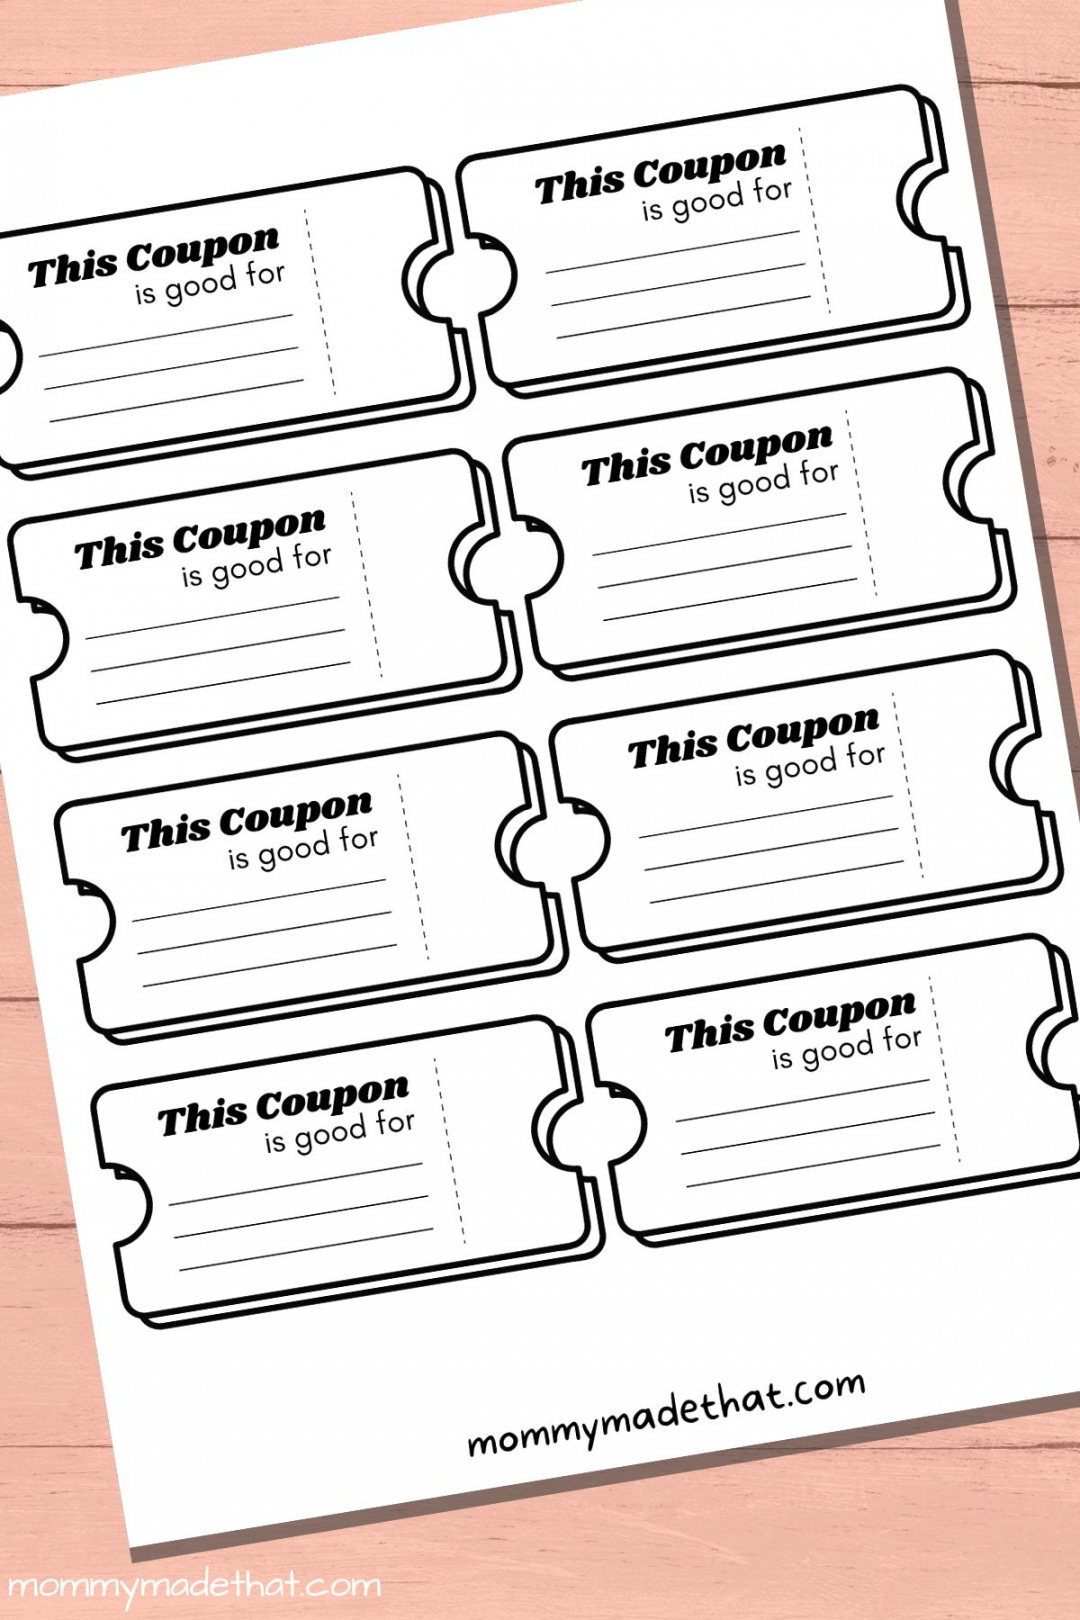 Free Printable Coupon Templates - Printable - Lots of Blank Coupon Templates (Free Printables!)